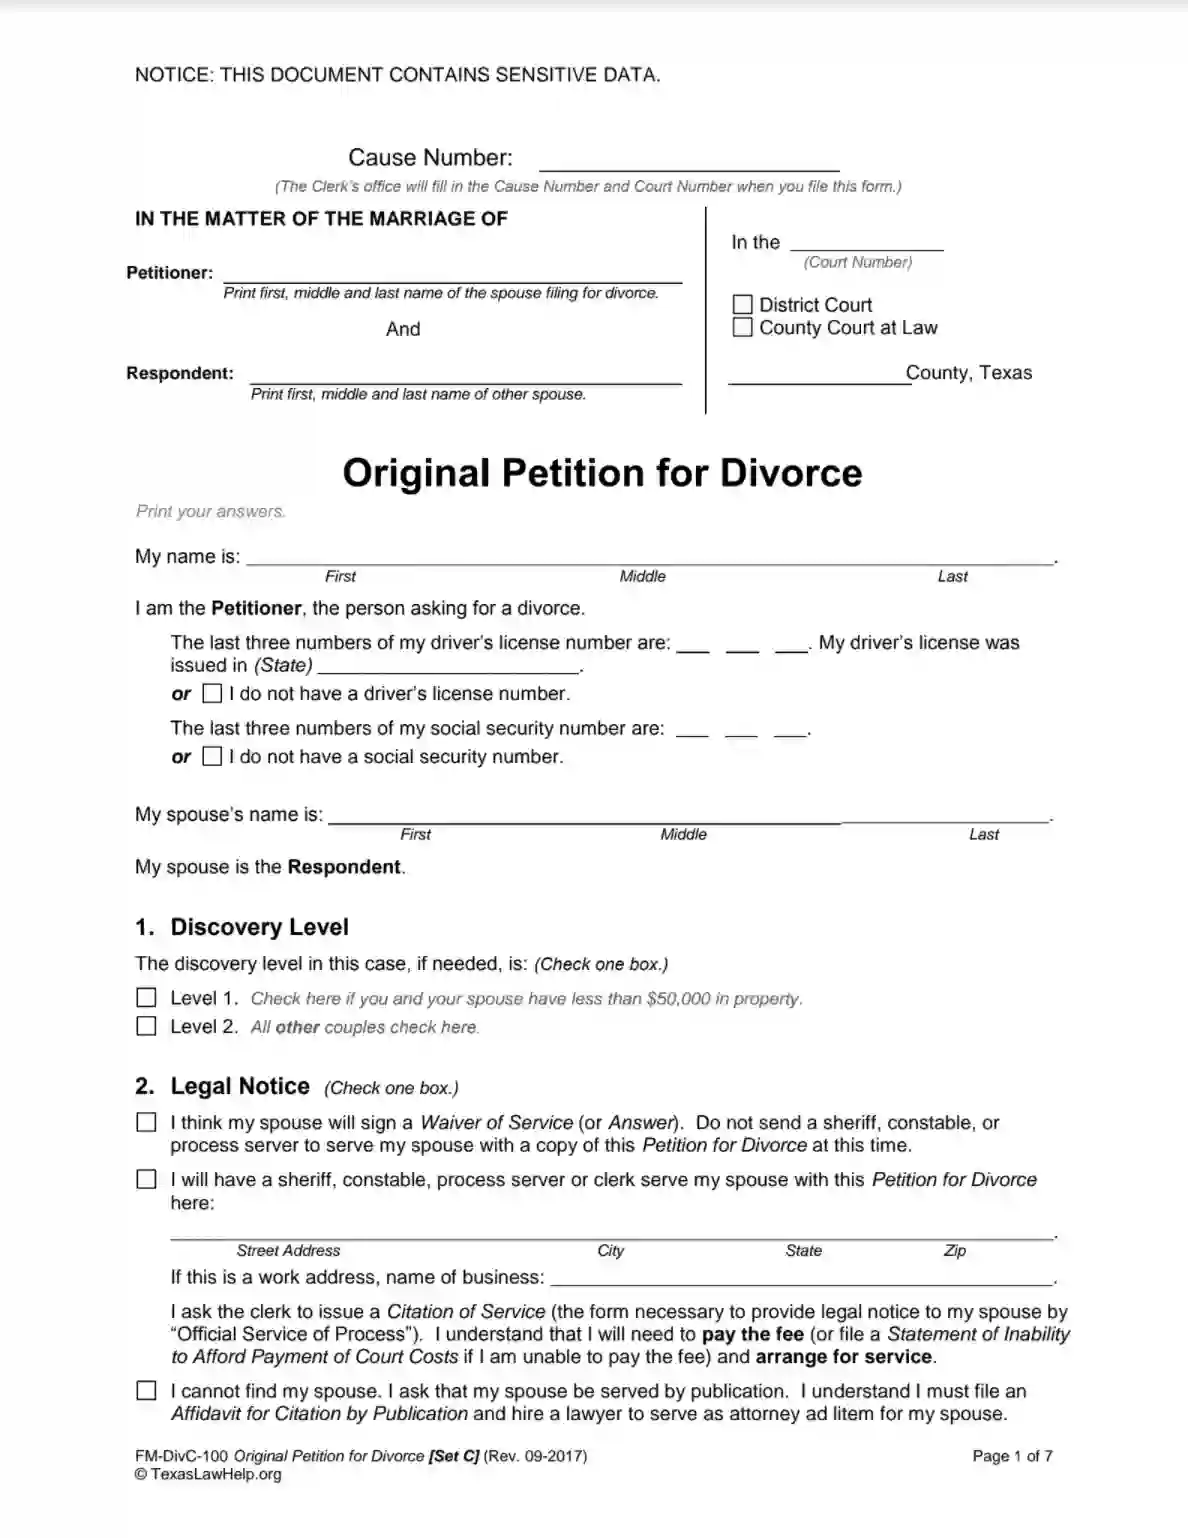 texas law help fm divc 100 original petition for divorce set c